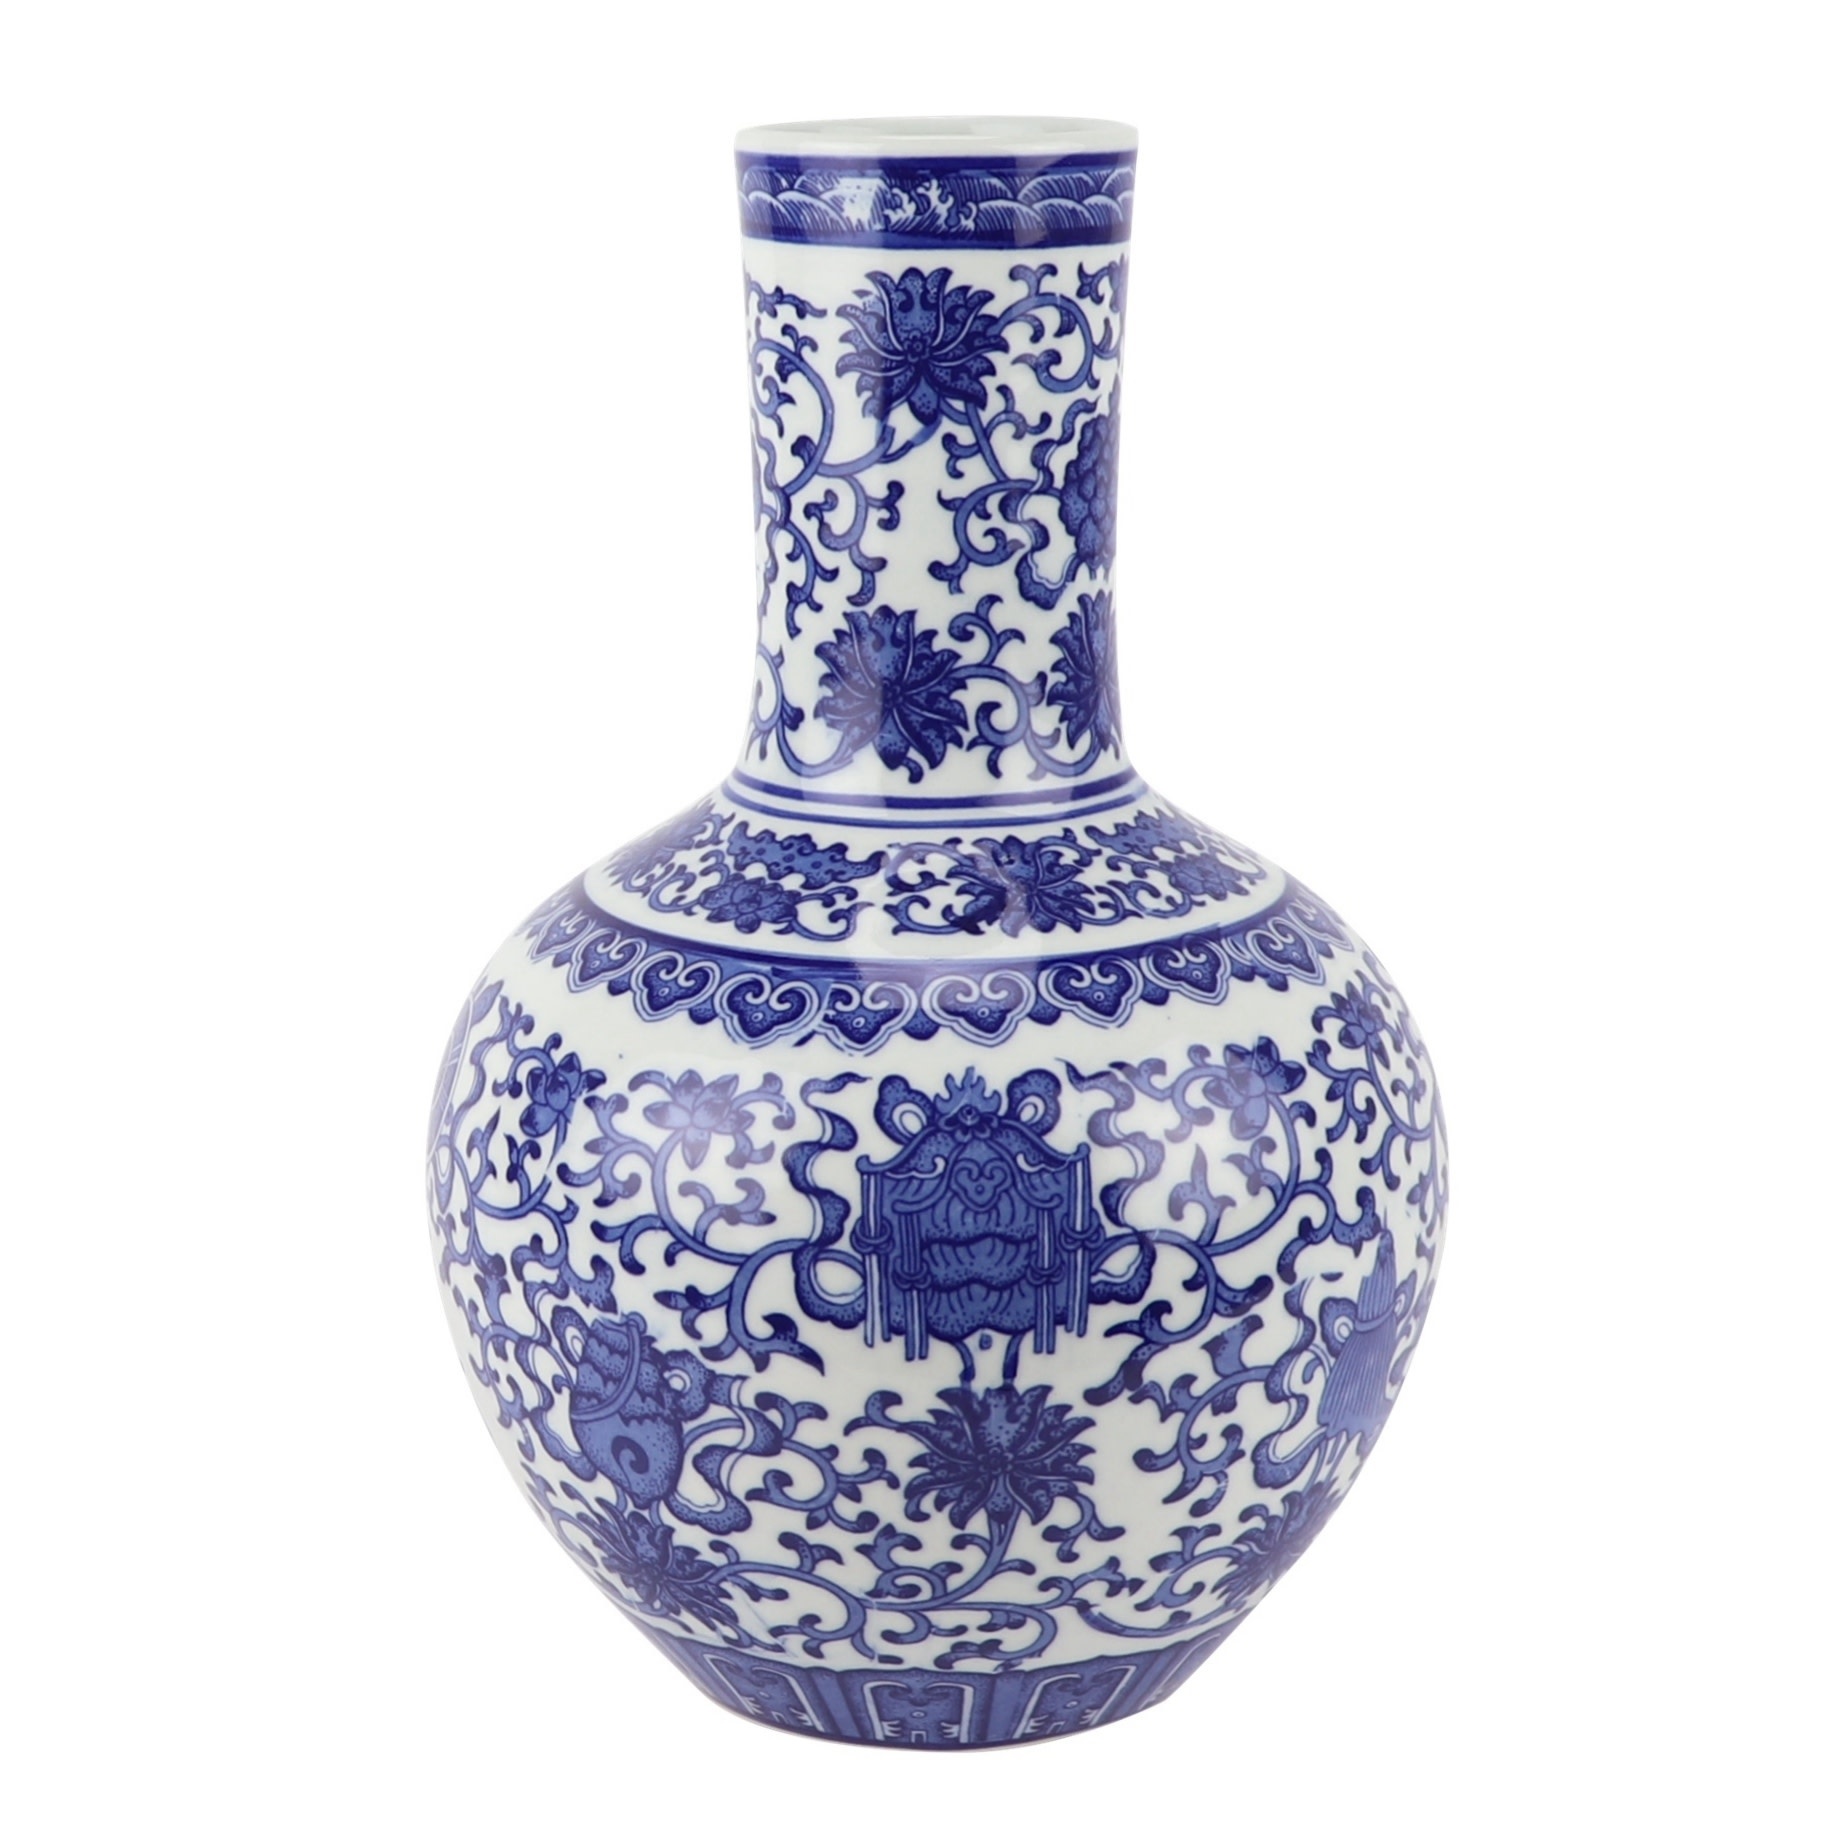 Chinese Vaas Porselein Blauw Wit D22xH34cm - Shop nu bij Orientique